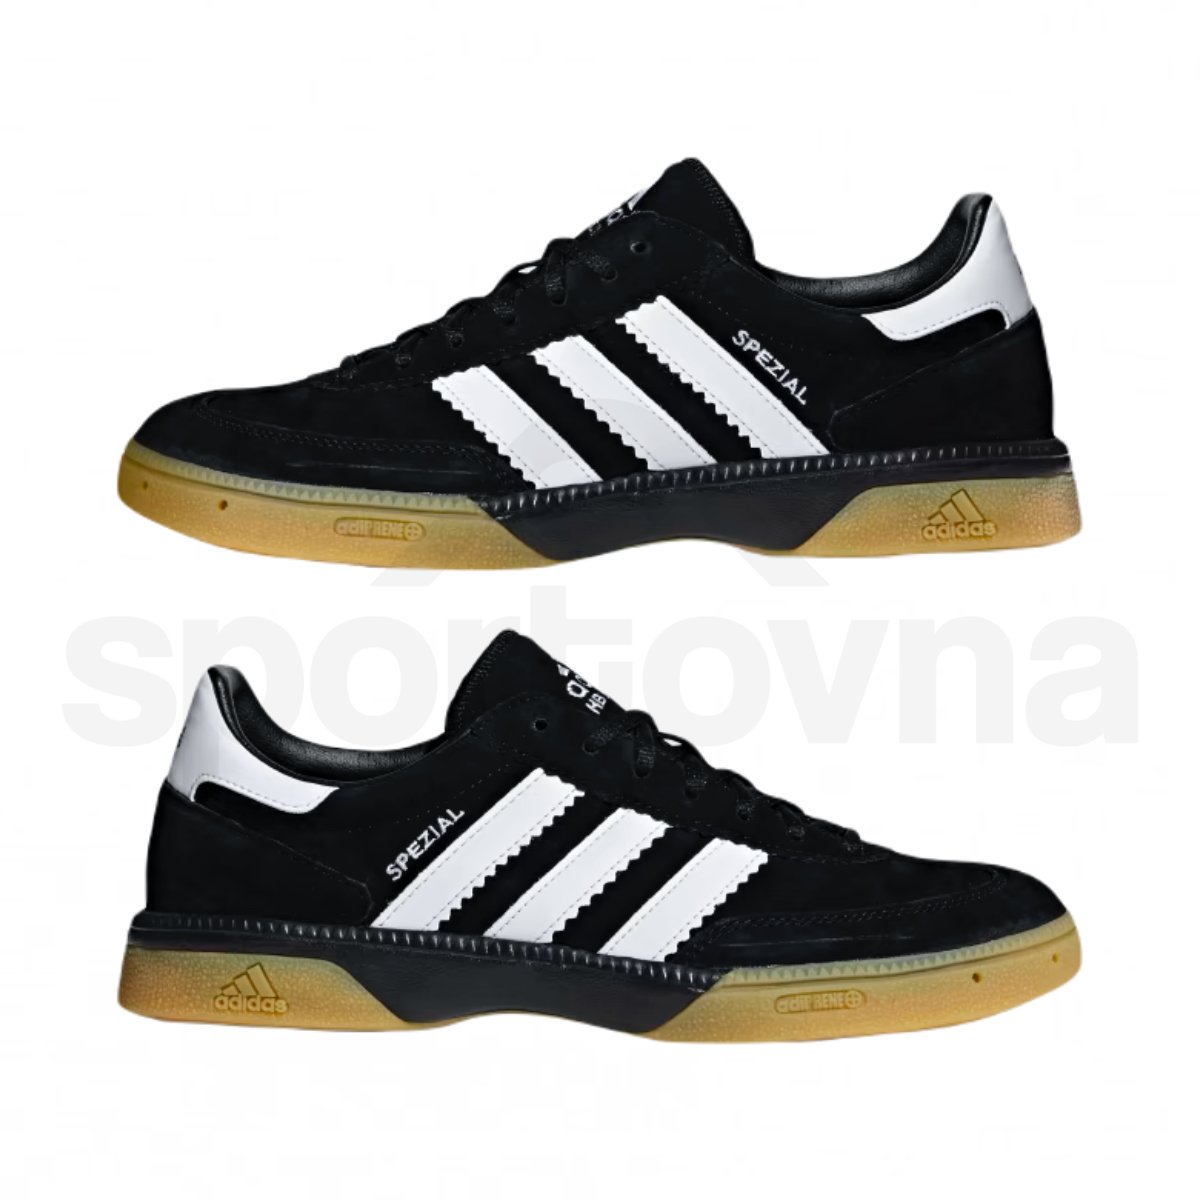 Obuv Adidas HB Spezial M - černá/bílá